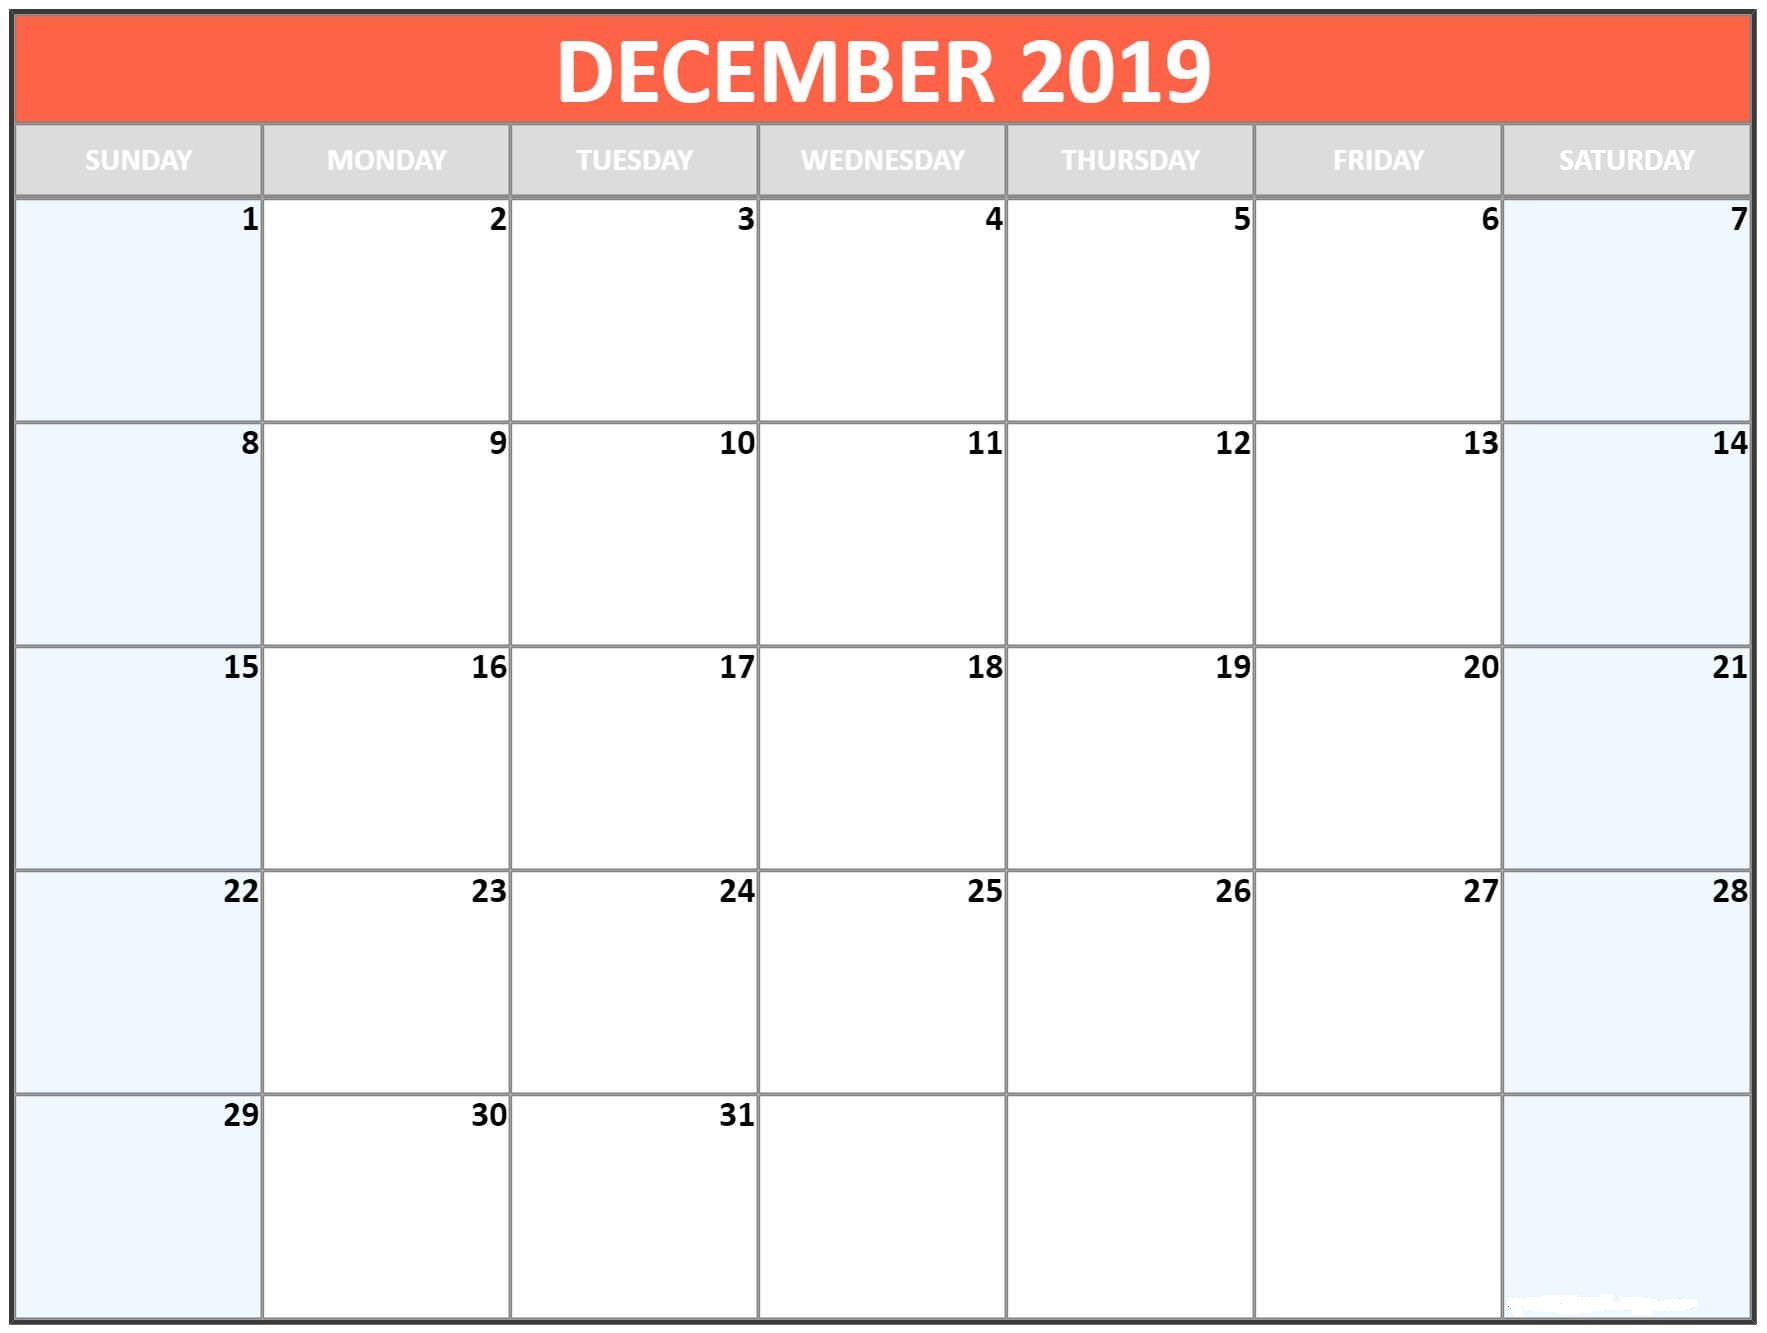 December 2019 Calendar Wallpaper